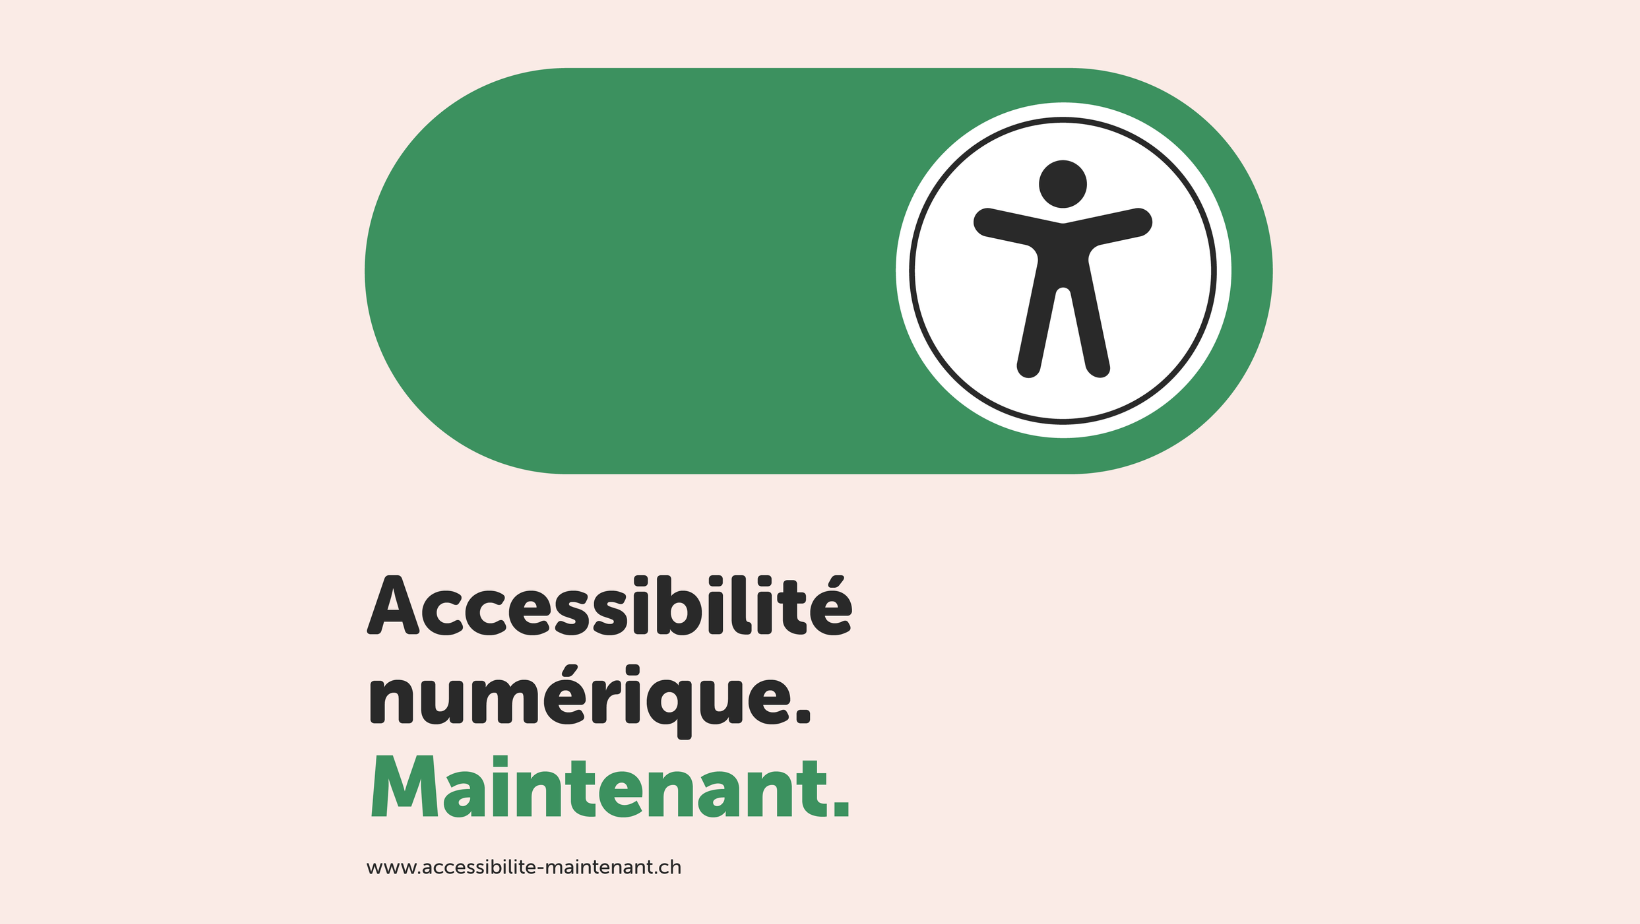 Le logo de la campagne accessibilité numerique - maintenant.